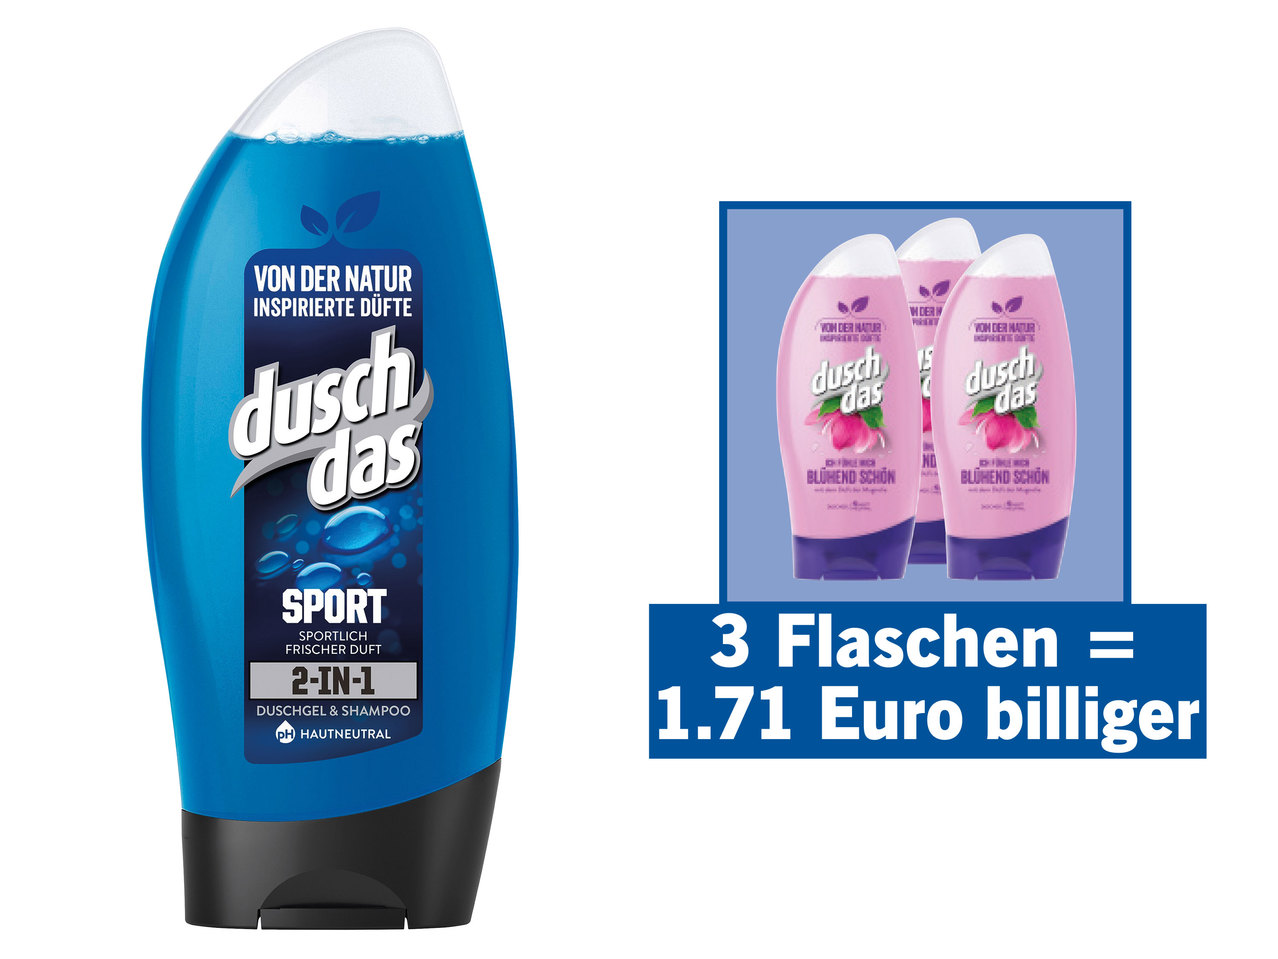 DUSCHDAS Duschgel/Duschgel & Shampoo